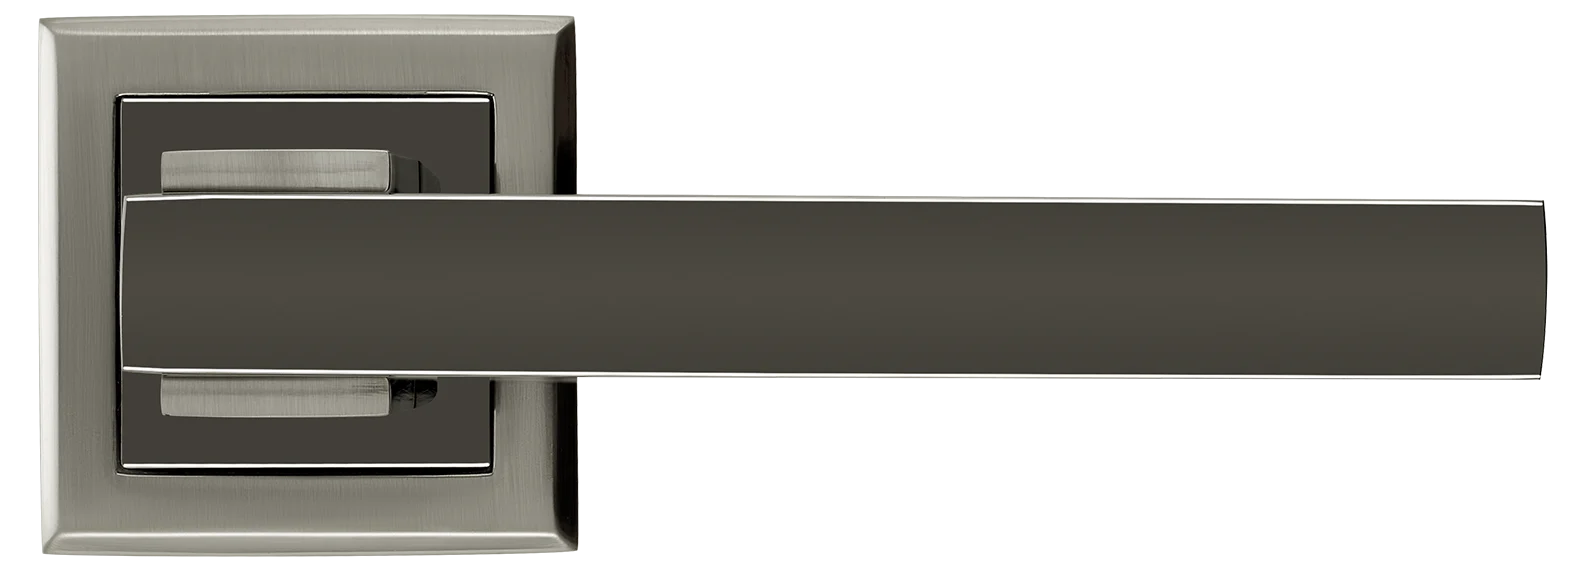 PIQUADRO, ручка дверная MH-37 SN/BN-S, на квадратной накладке, цвет - бел. никель/черн. никель фото купить в Рязани